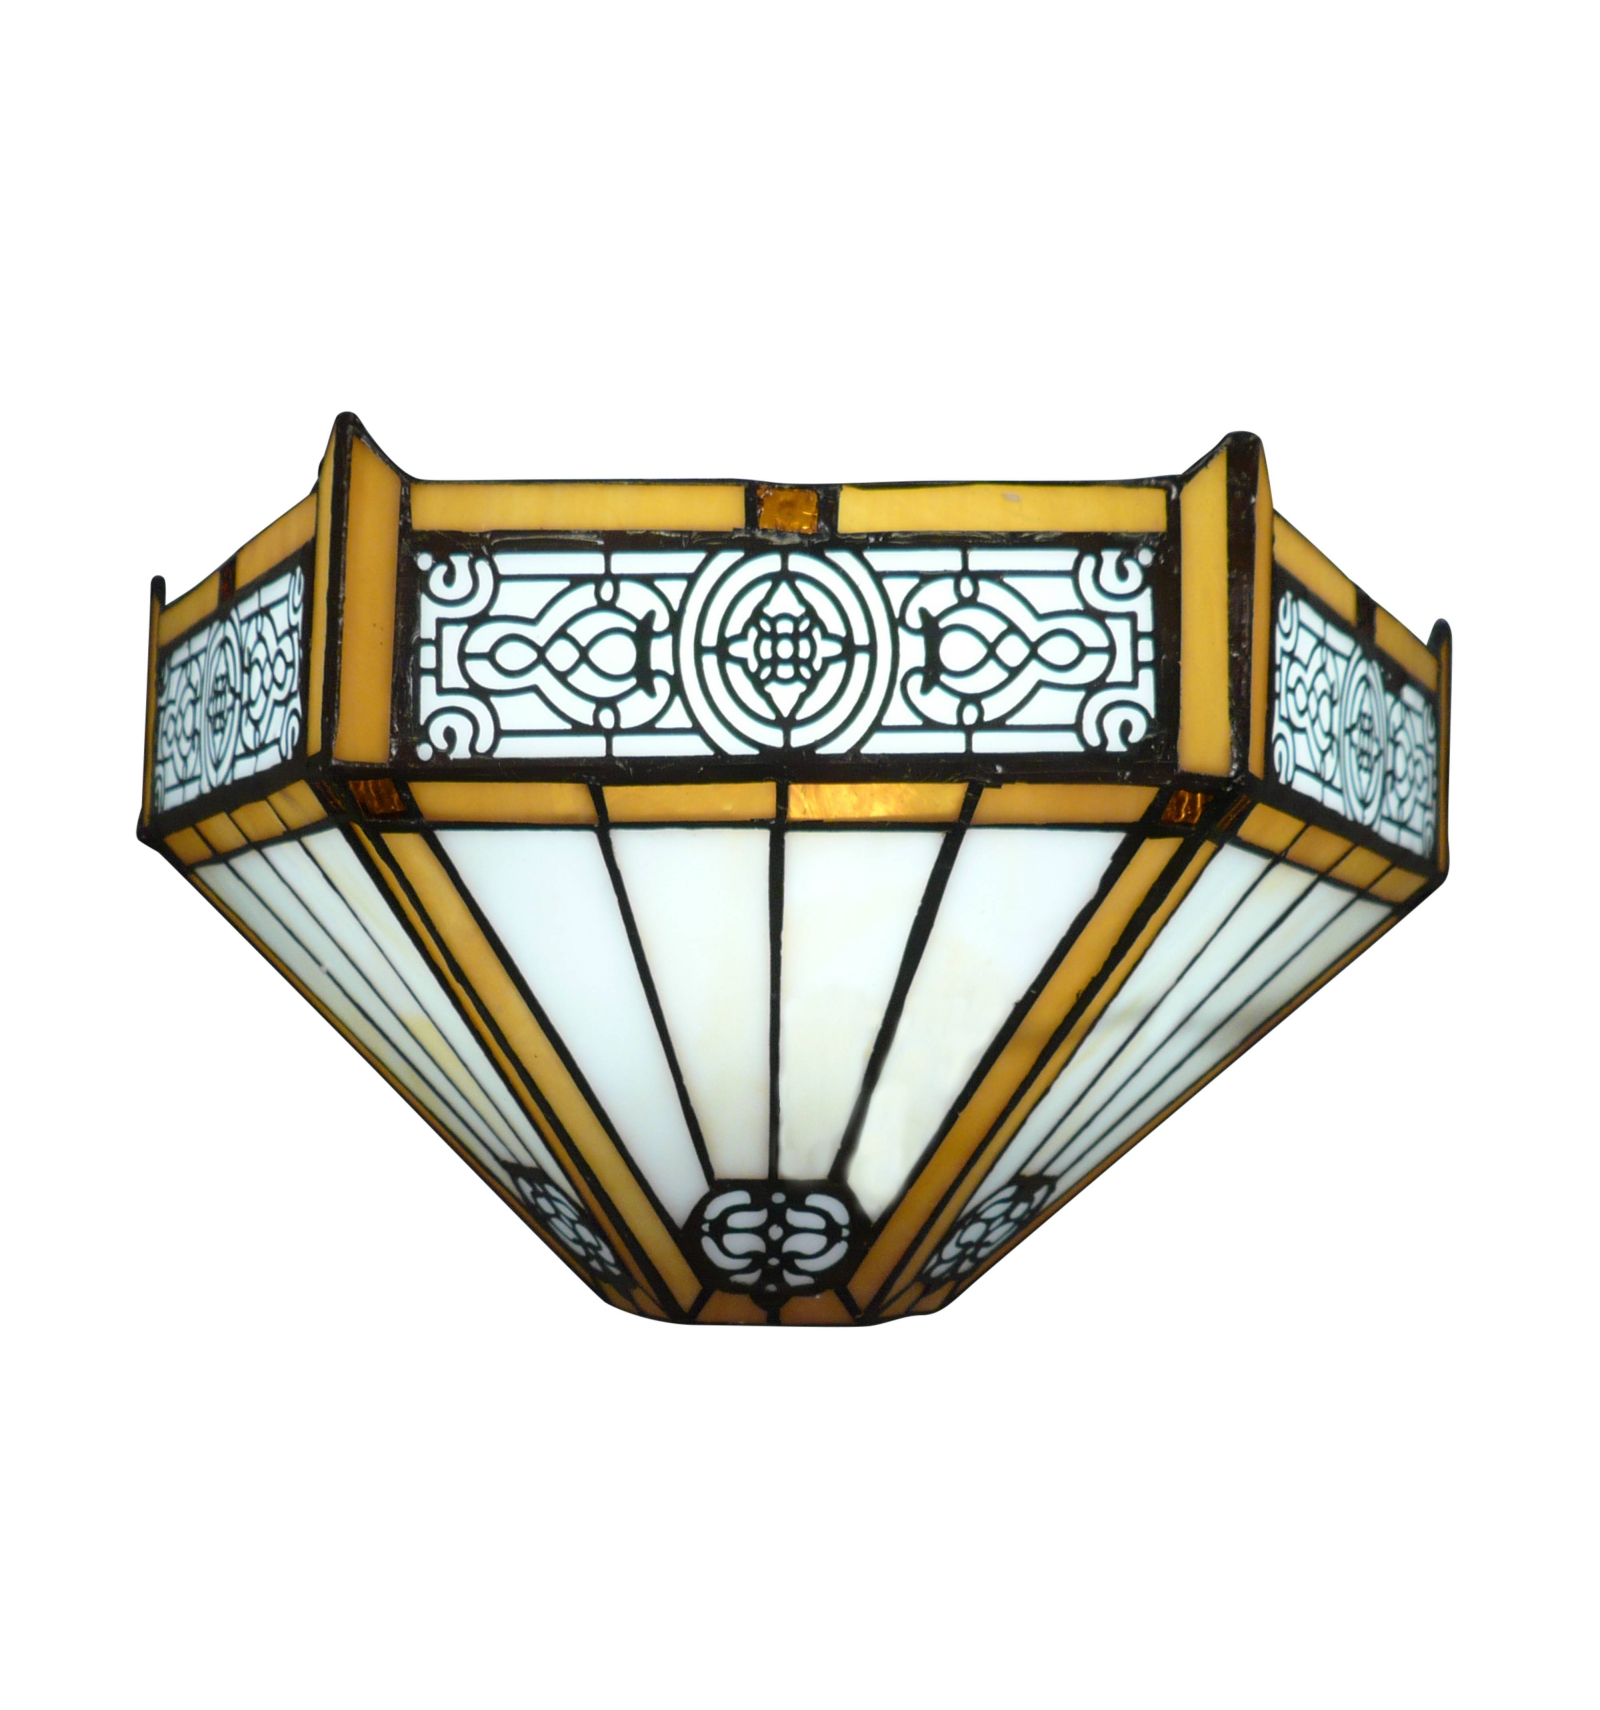 Utrecht - Deco Tiffany lampen